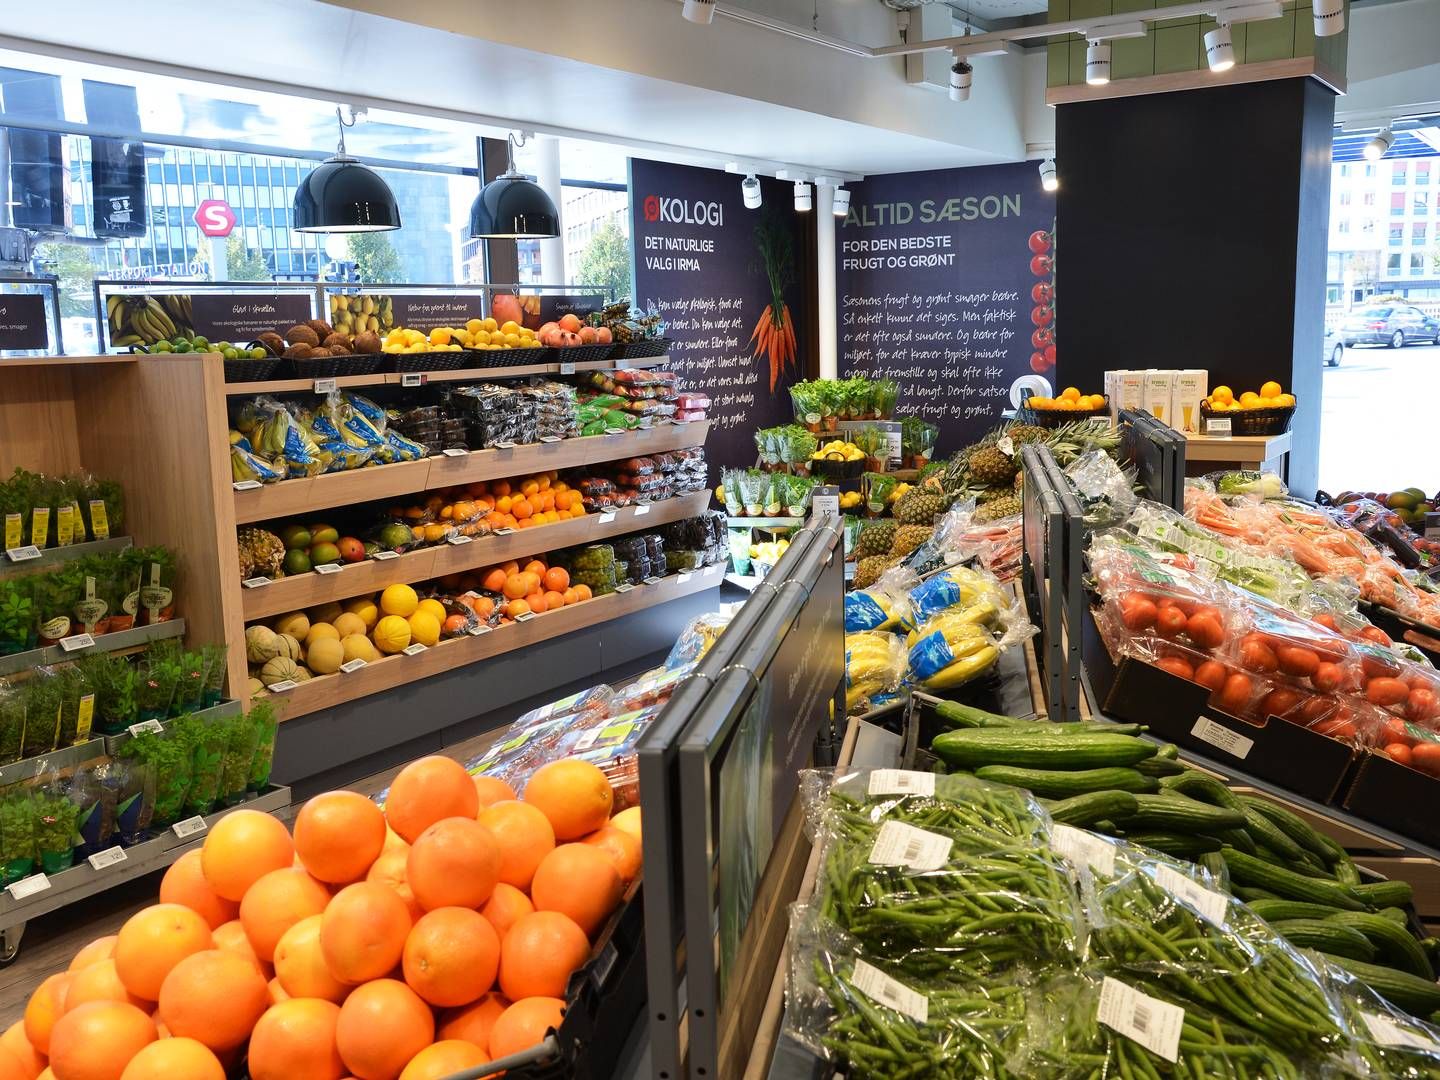 En ny EU-lovgivning vil udfase plastikindpakket frugt og grønt i supermarkedet i 2030. | Foto: Mik Eskestad